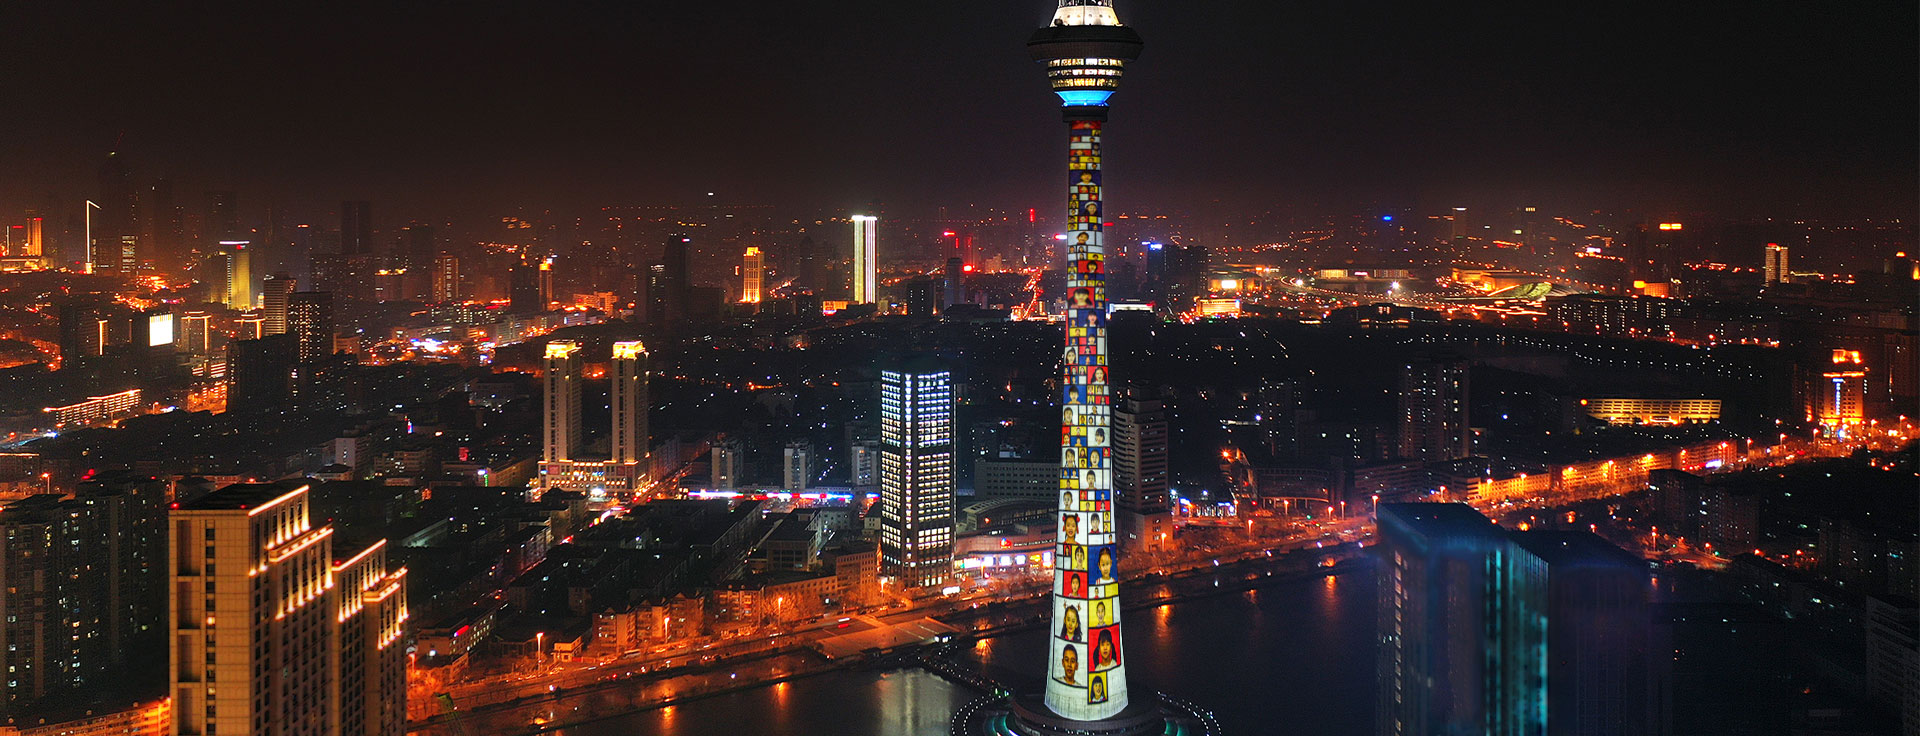 天津电视塔中国高度排第几_天津电视塔的高度_